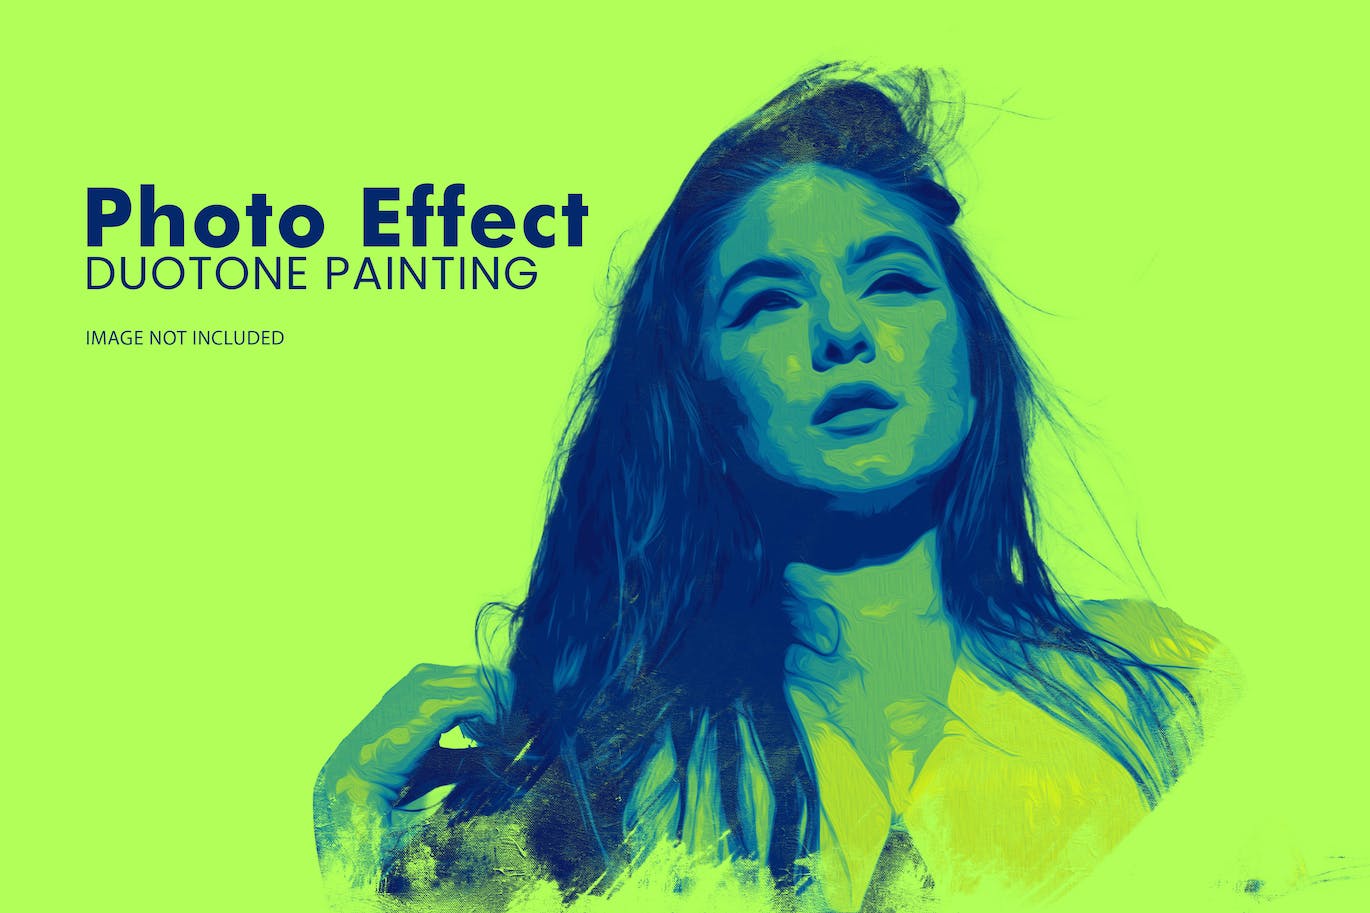 双色调绘画照片效果PS图层样式 Duotone Painting Photo Effect 插件预设 第1张